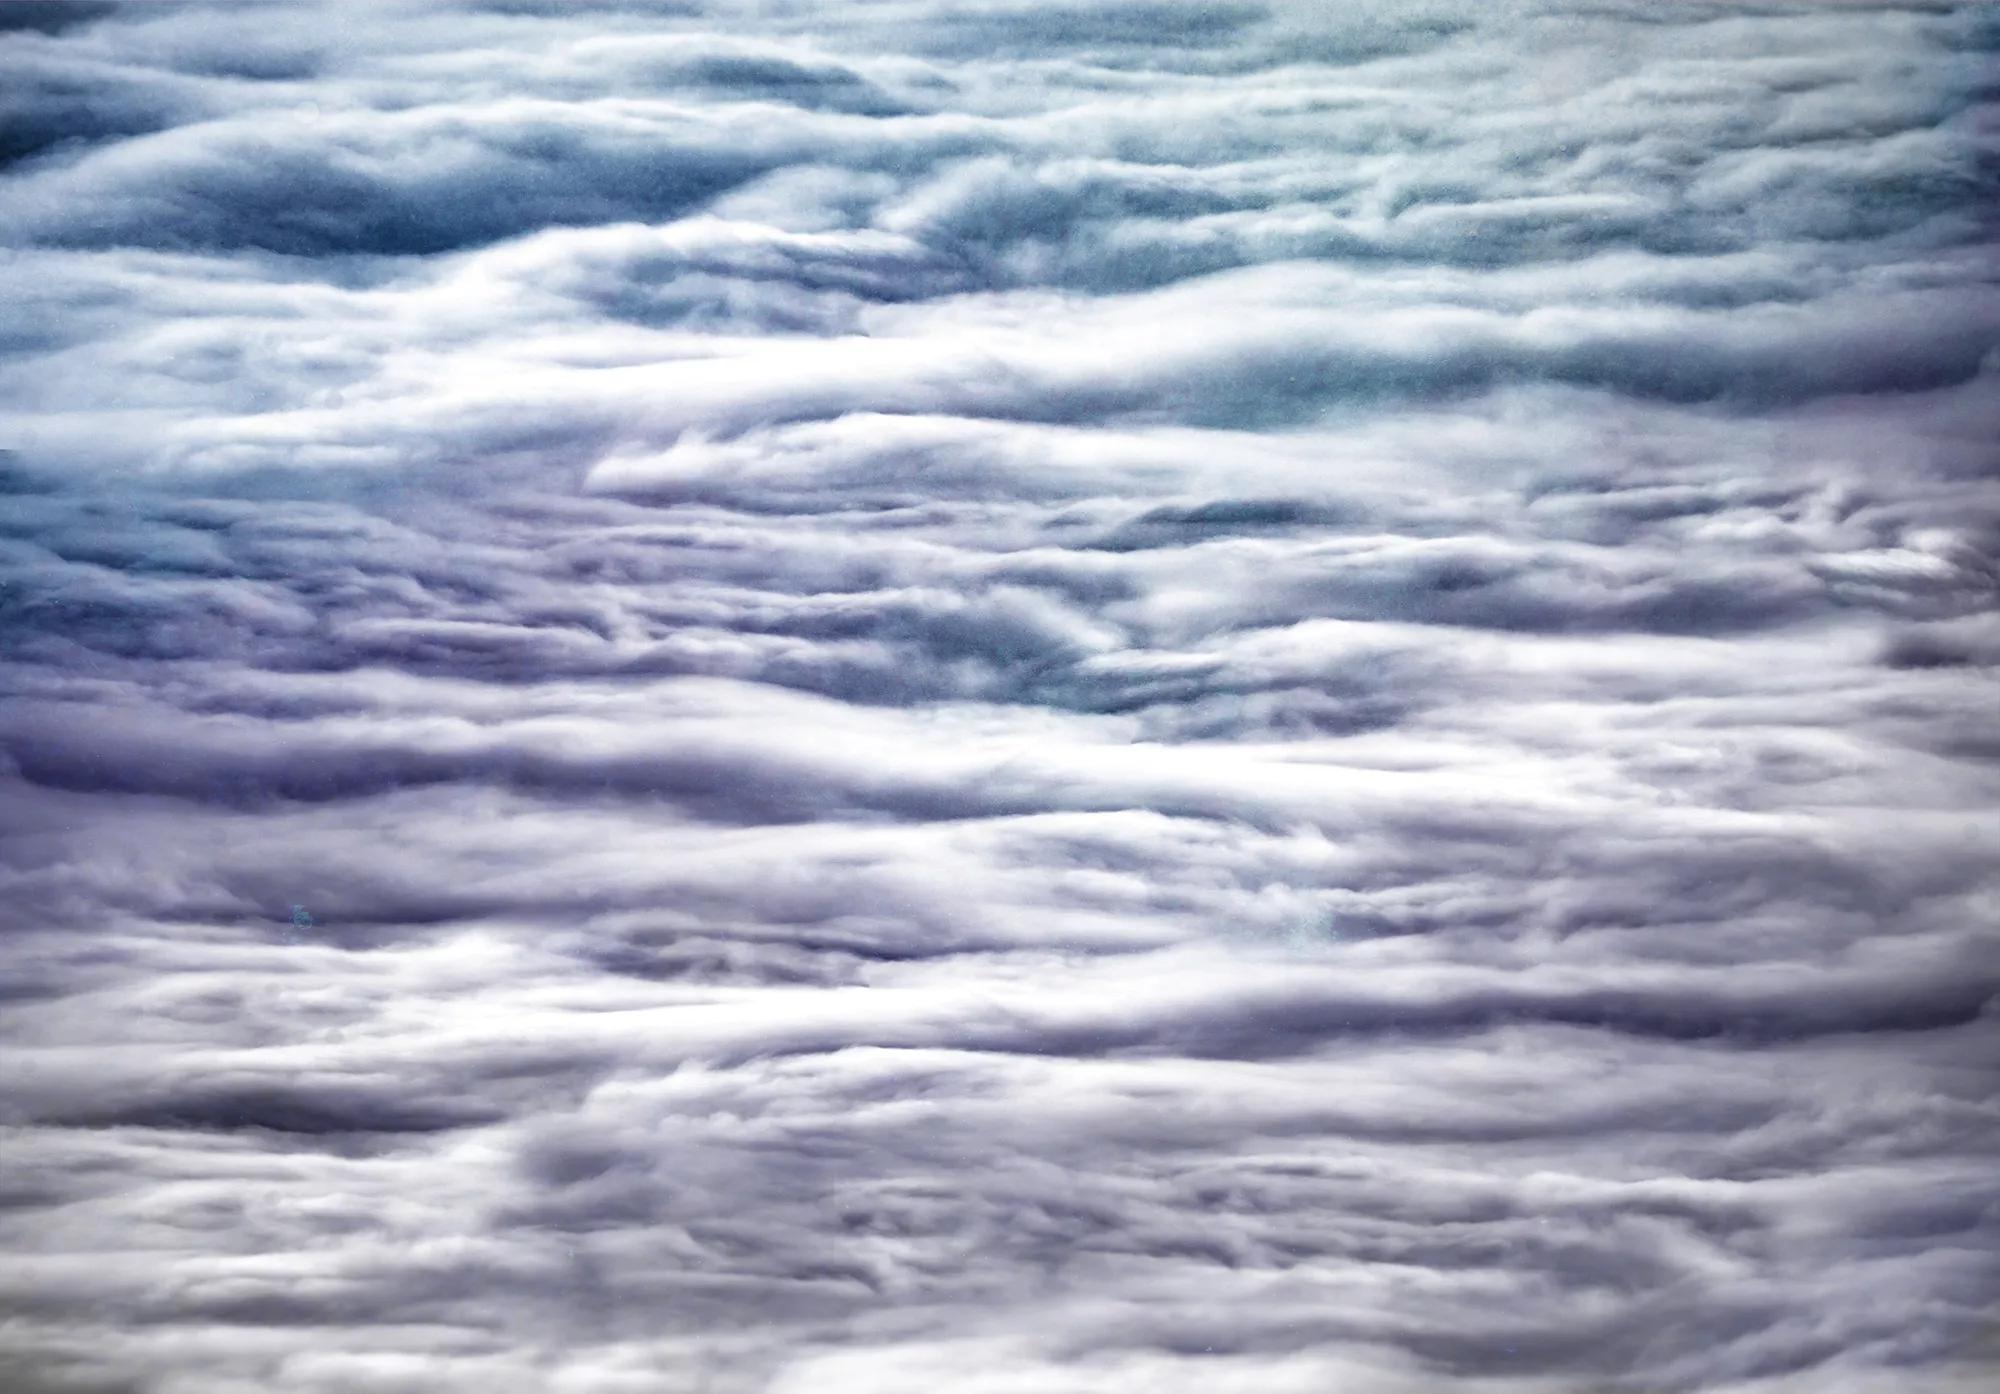 Óriás fali poszter kék színvilágban felhő mintával 368x254 vlies